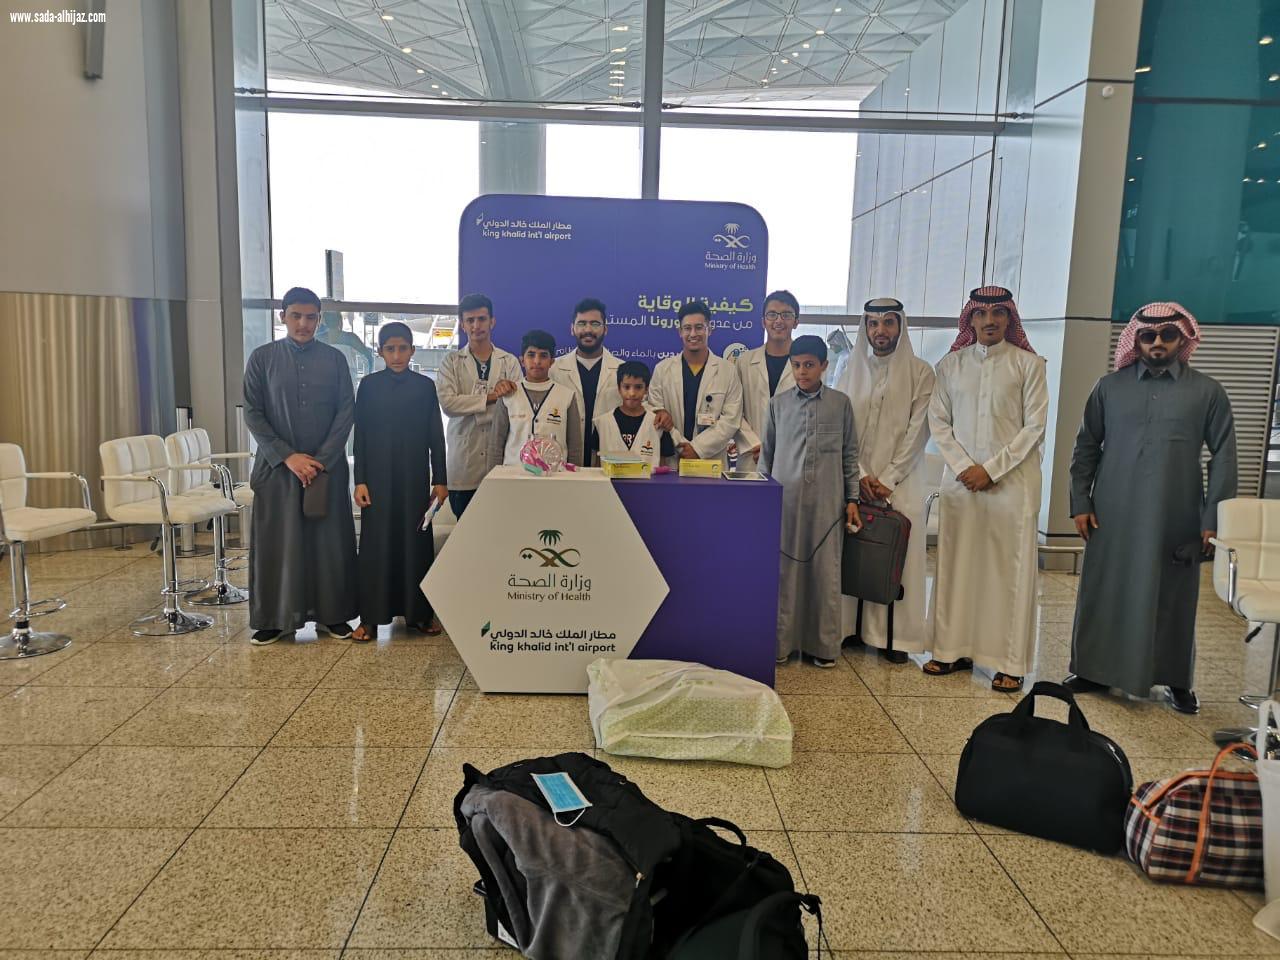 صحة الرياض تنفذ حملة توعوية للوقاية من عدوى فيروس كوروناالمستجد في مطار الملك خالد